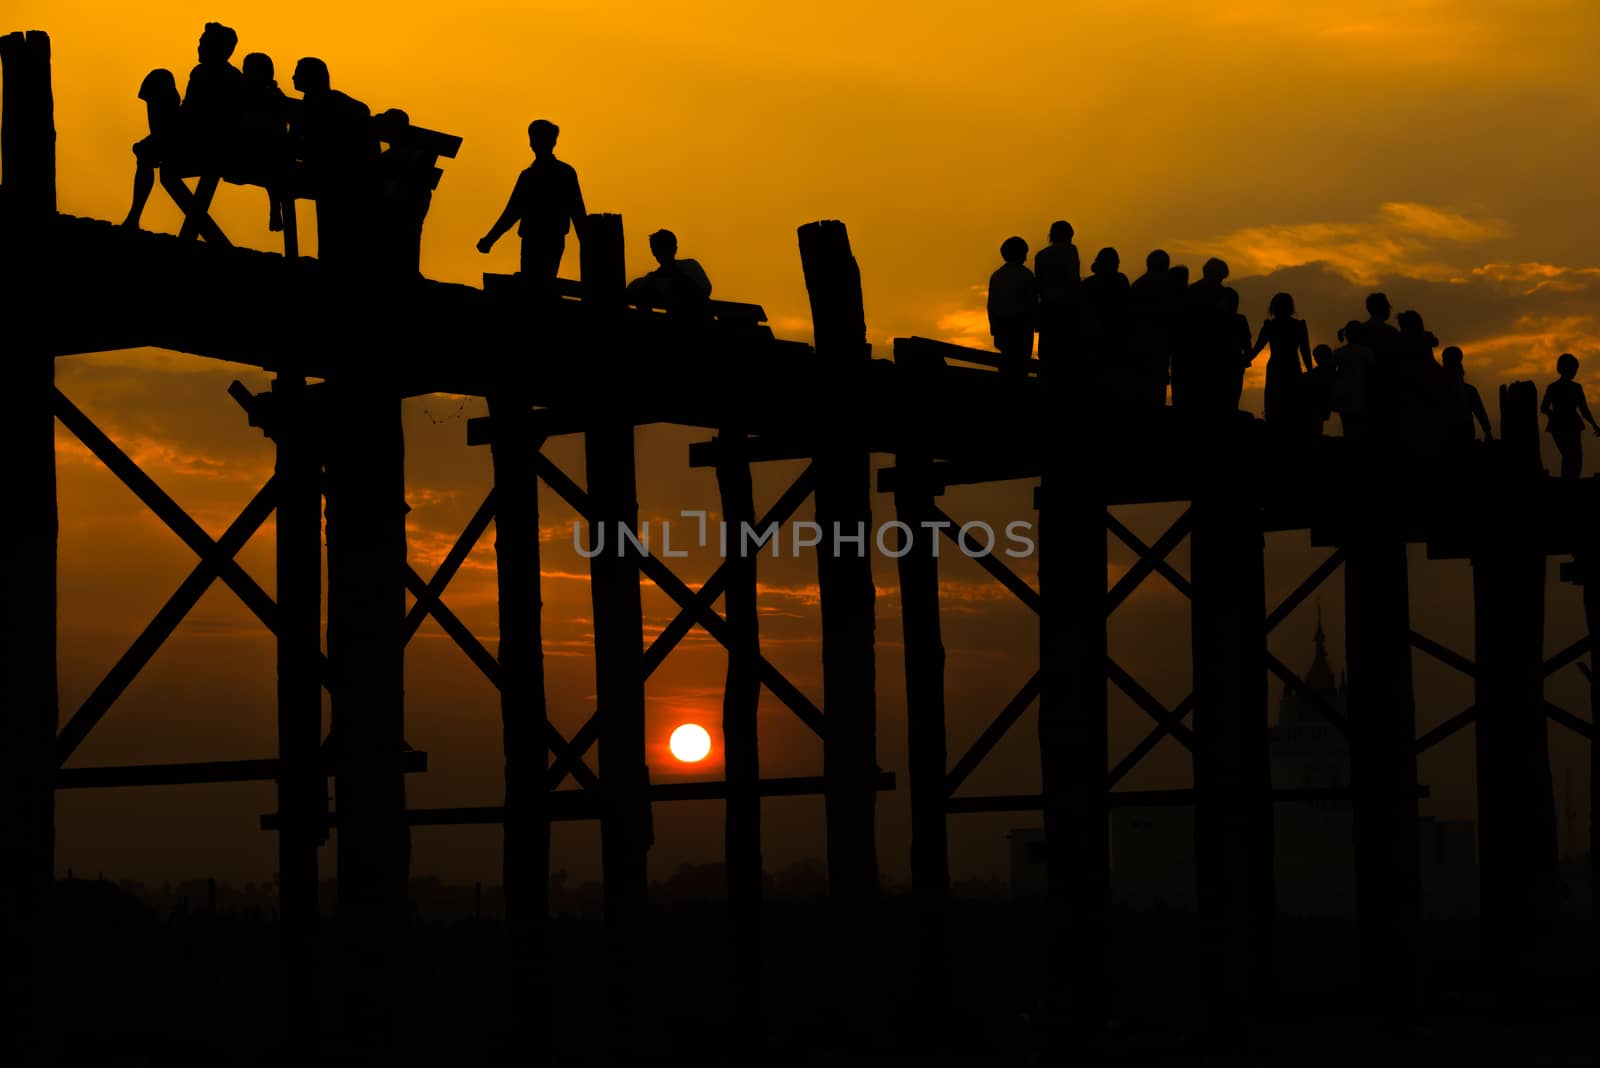 Silhouetted people crossing U bein bridge with sunset,The longest wooden bridge in Mandalay,Myanmar.